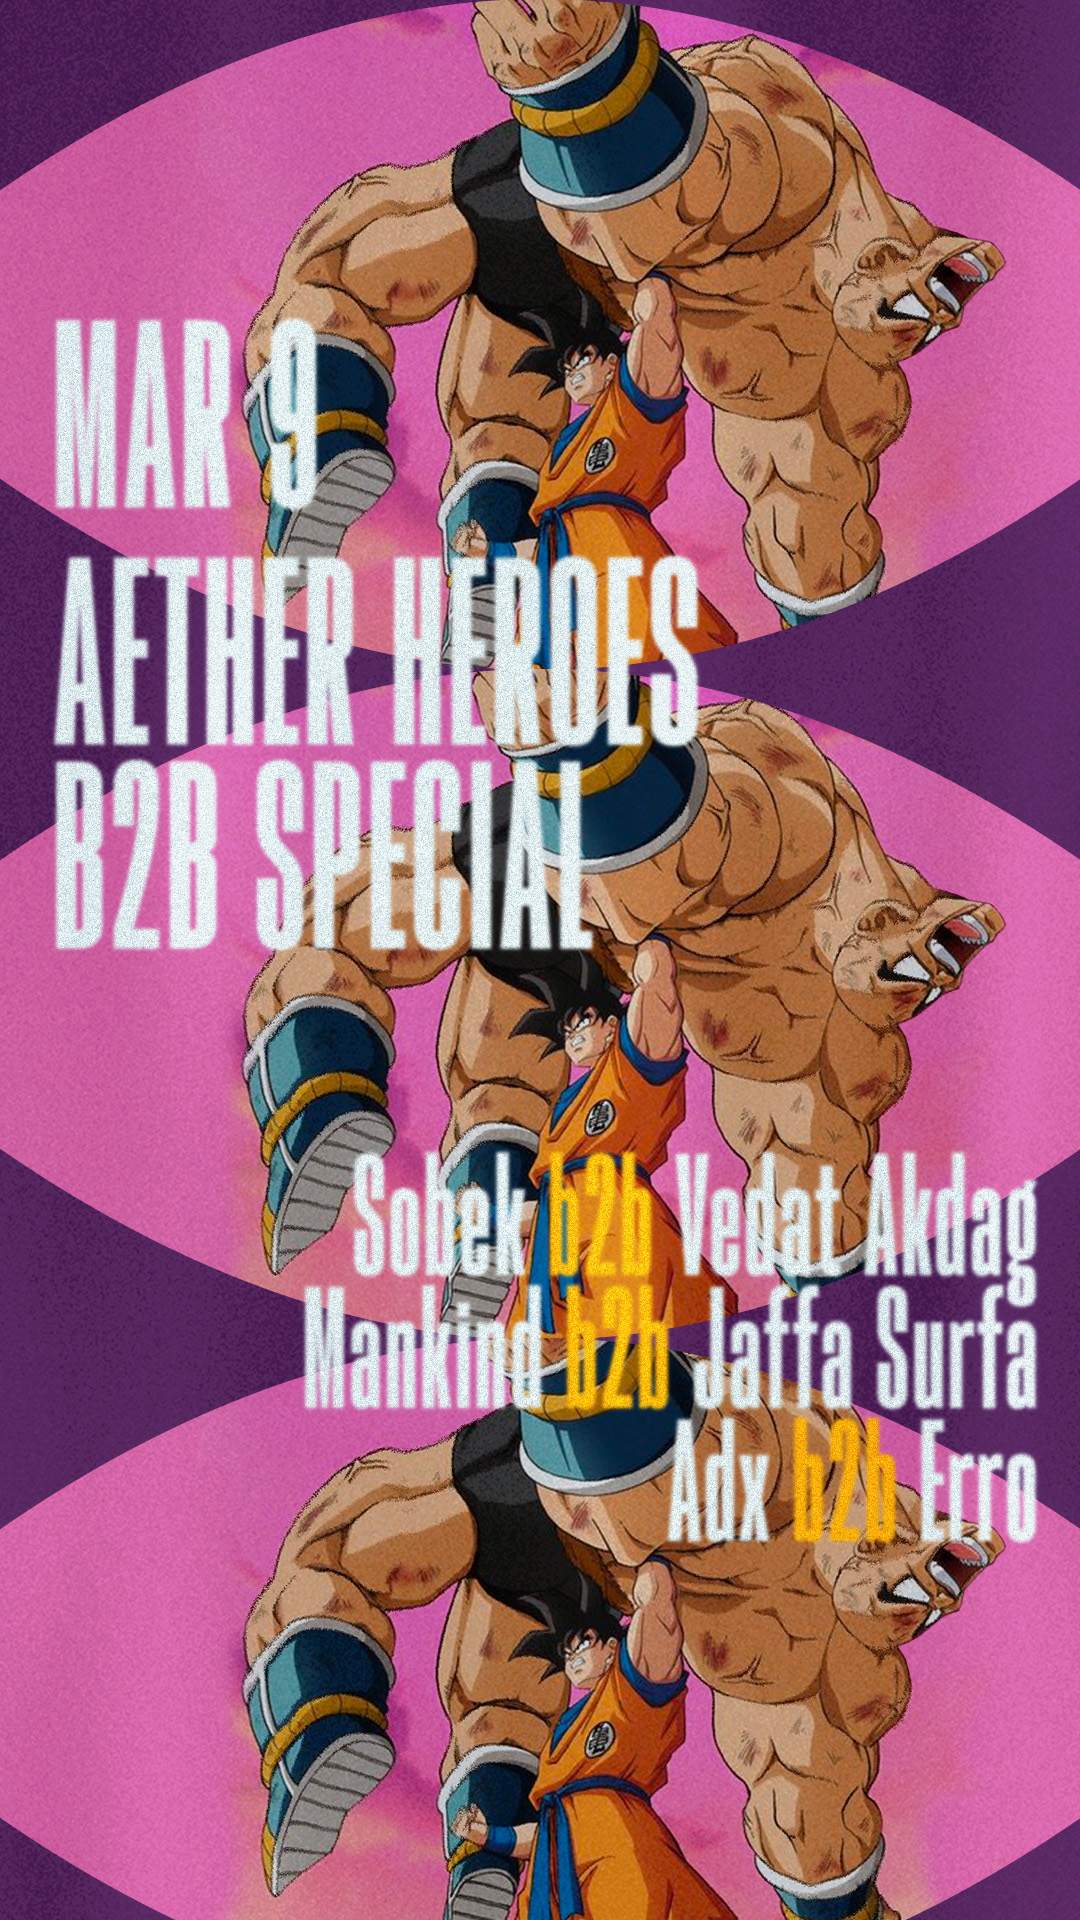 AETHER HEROES B2B SPECIAL: Sobek b2b Vedat Akdag, Mankind b2b Jaffa Surfa, Adx b2b Erro - フライヤー表